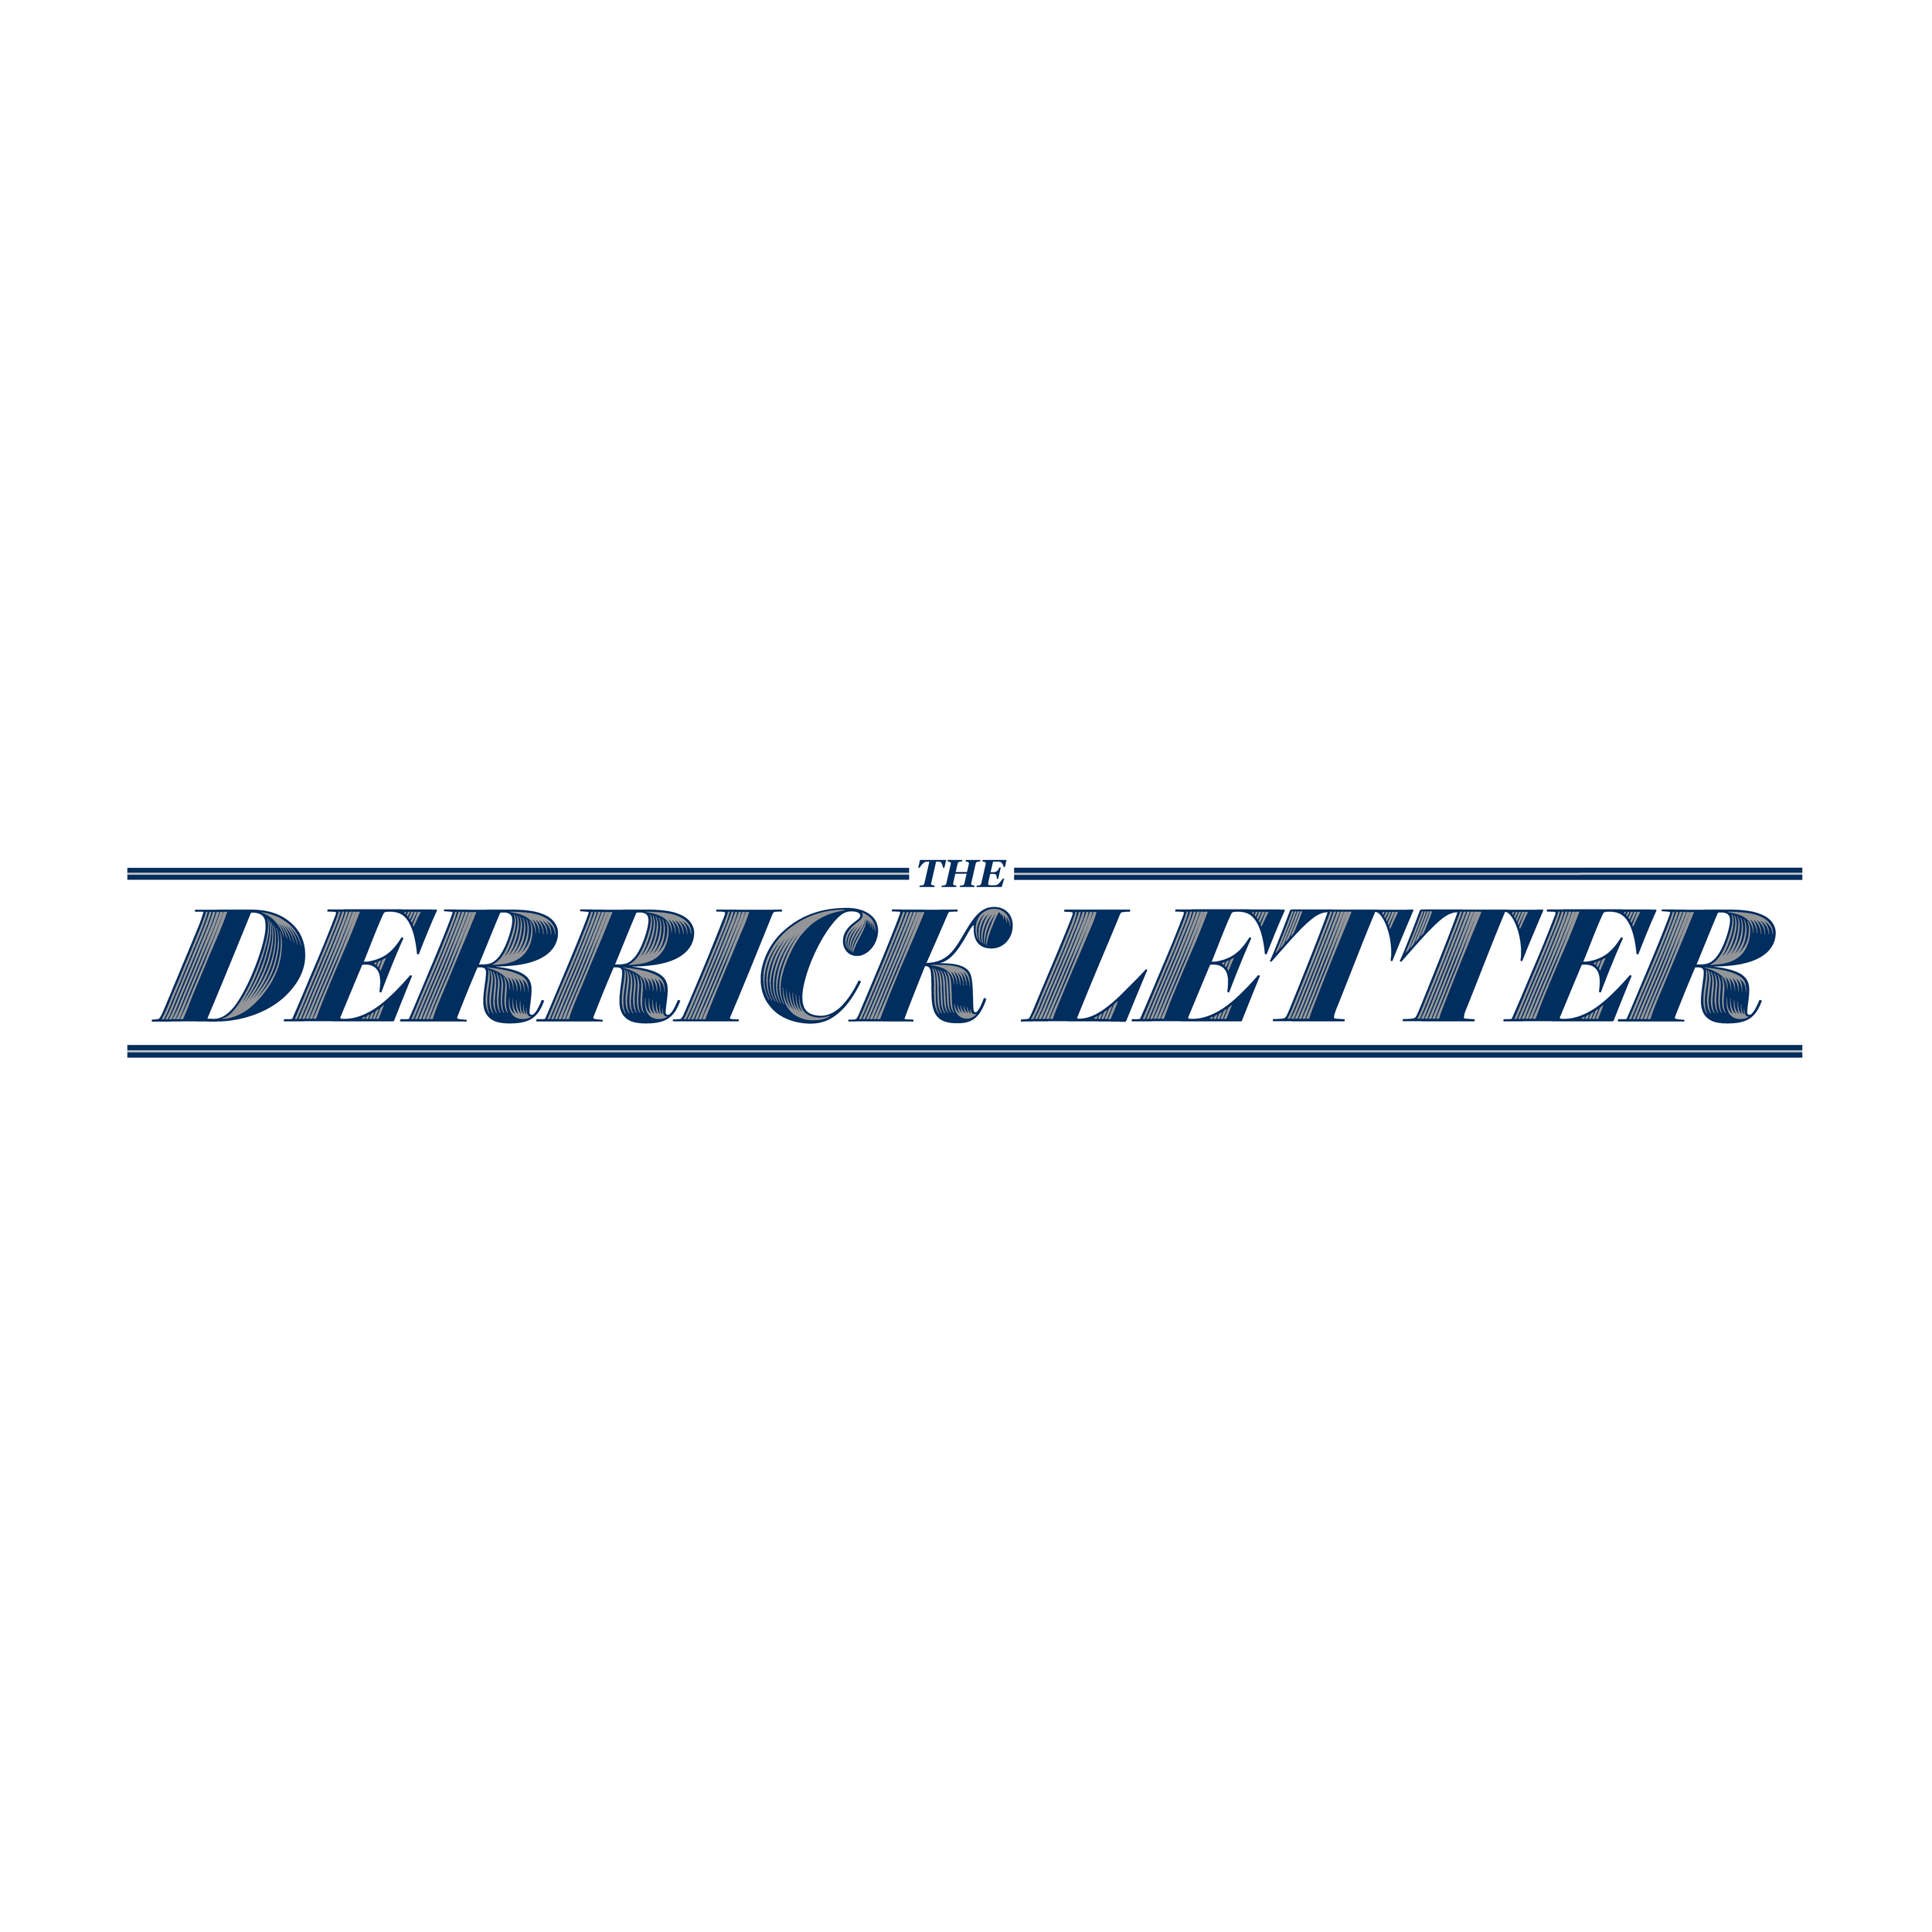 TheDerrickLetter_logo.png